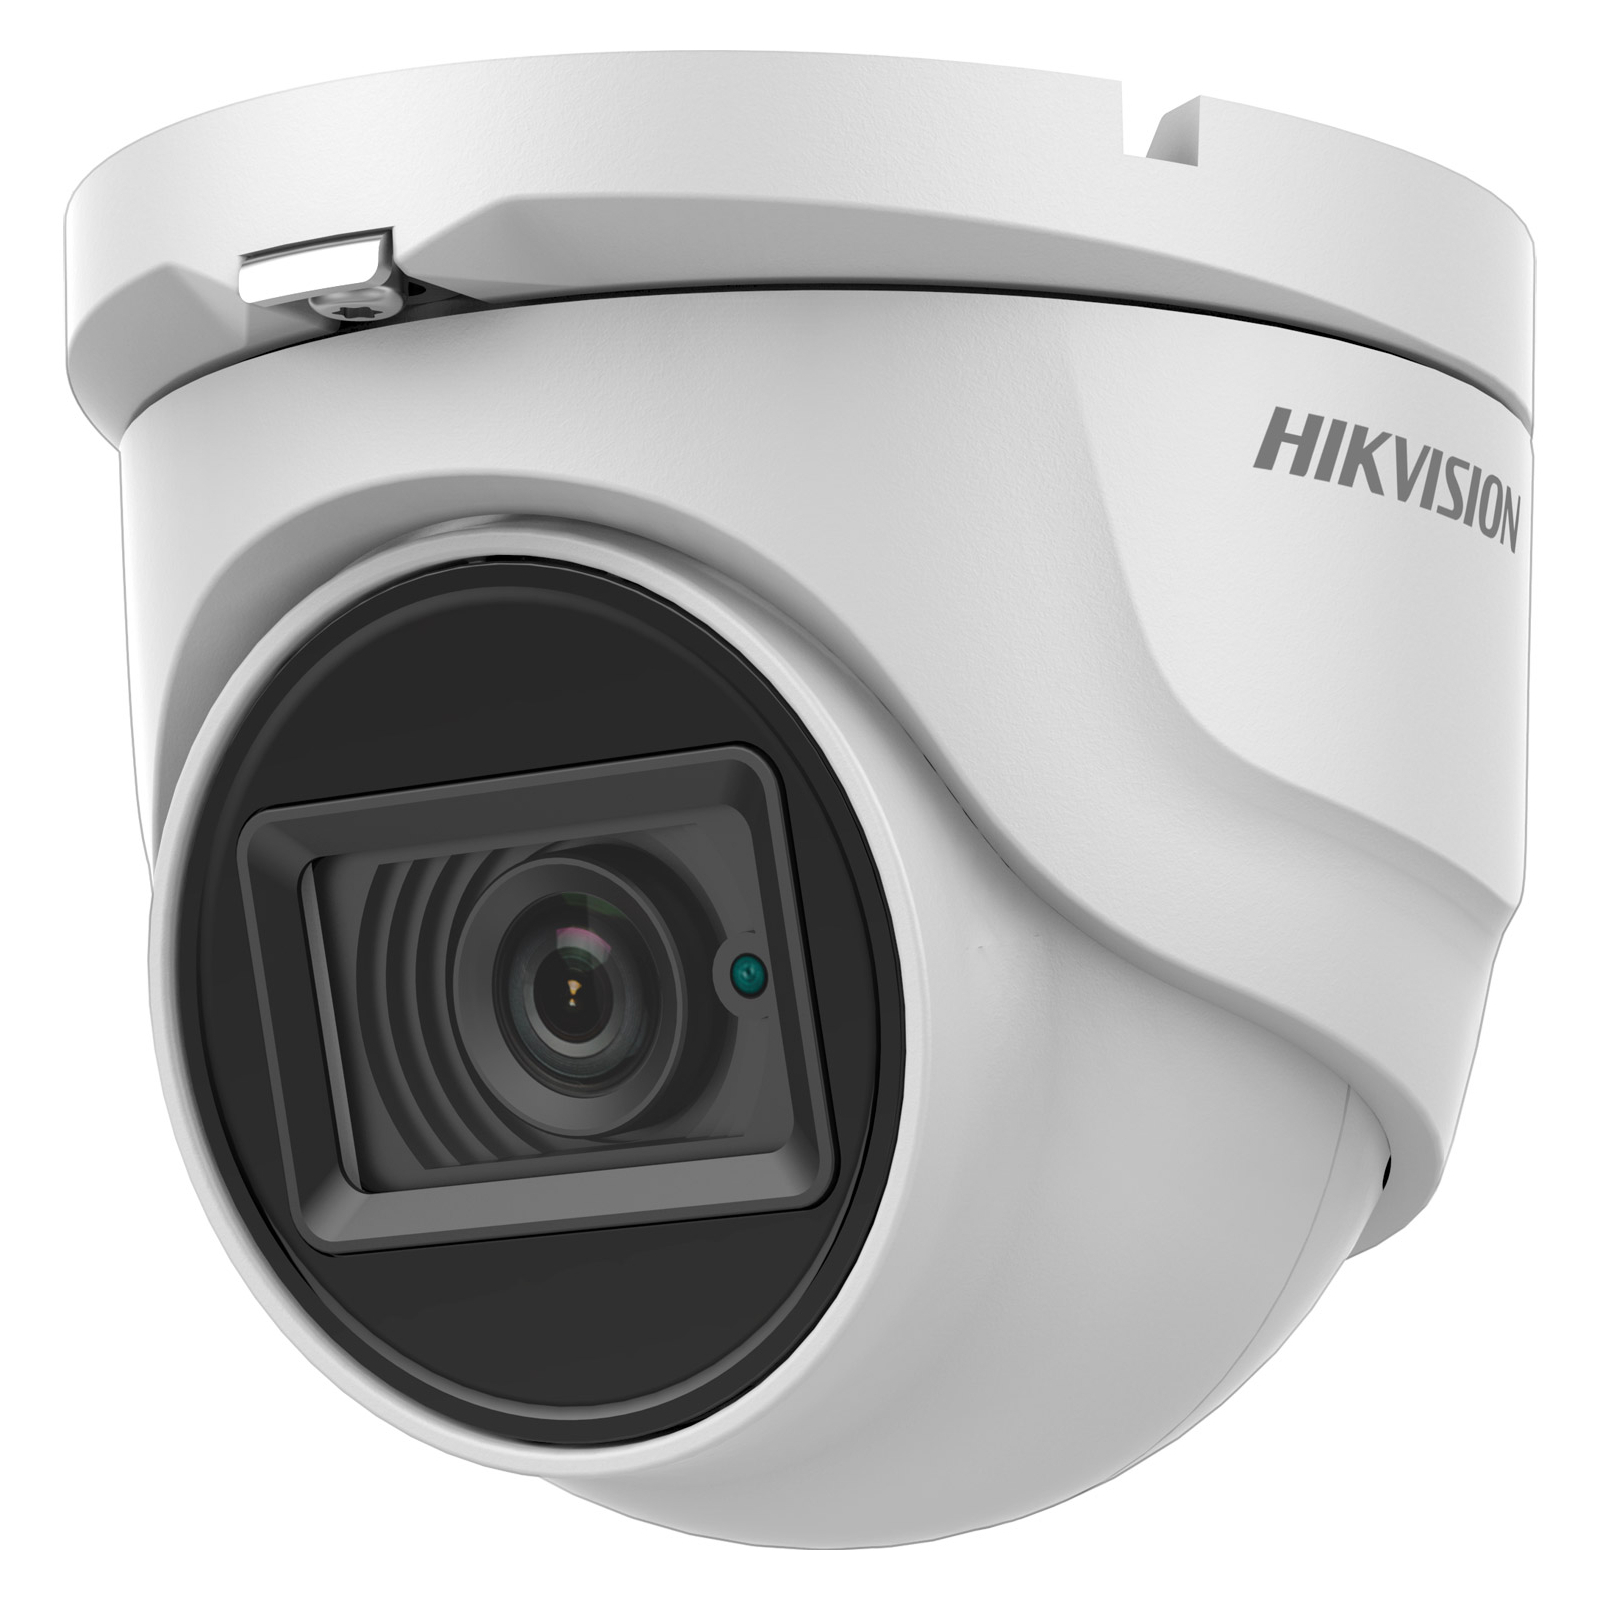 Камера видеонаблюдения Hikvision DS-2CE76U1T-ITMF (2.8)